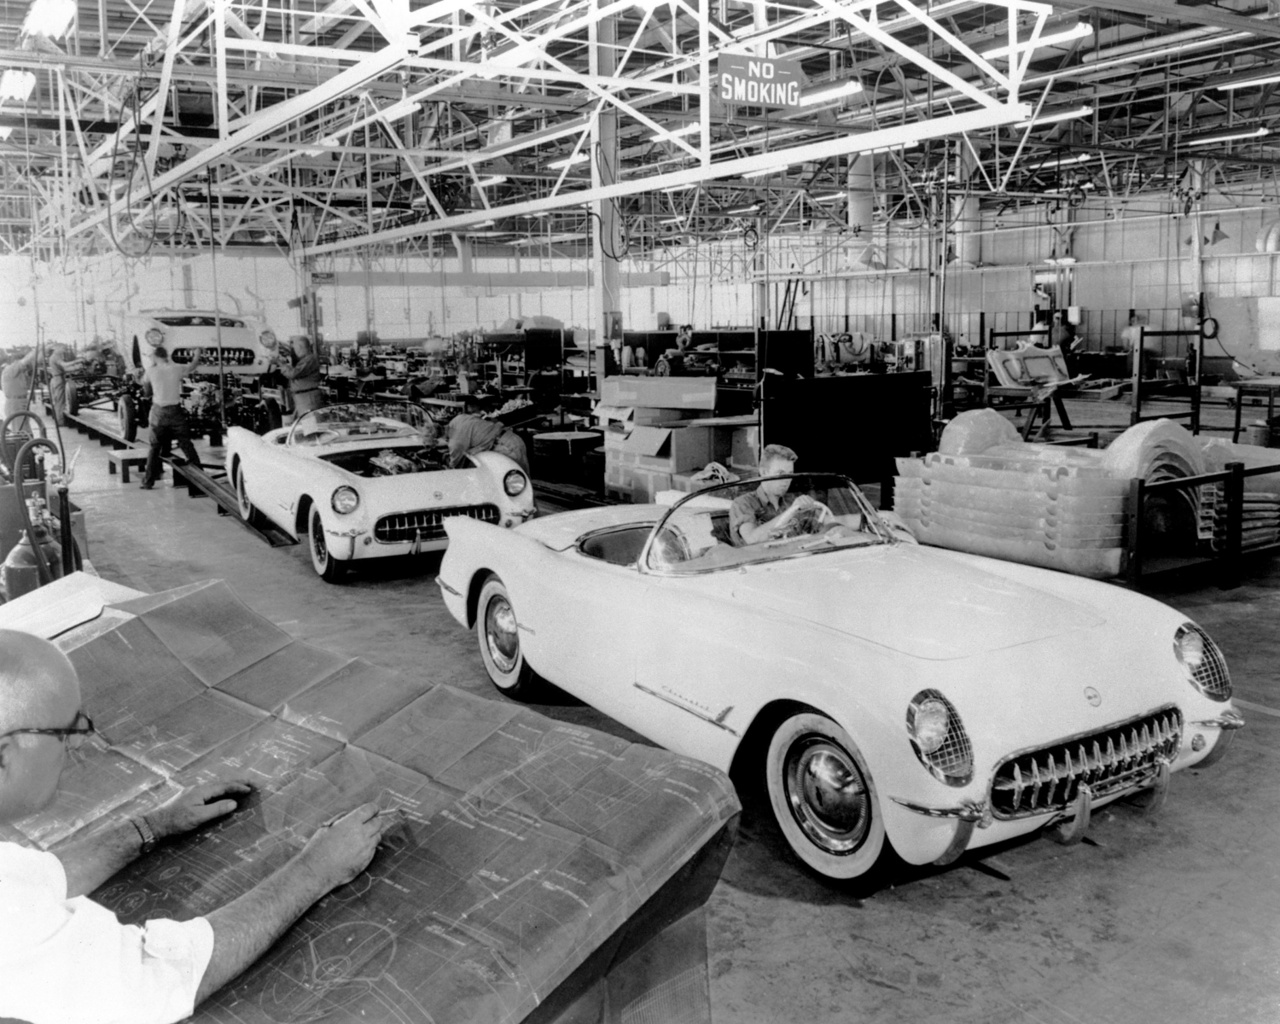 Már az első bemutató alkalmával hirtelen akkora lett az érdeklődés az elegánsan sikkes, magát az amerikai álmot megtestesítő autó iránt, hogy szinte muszáj volt elkezdeni a gyártását. Harley Earl eltalálta, méghozzá nagyon.